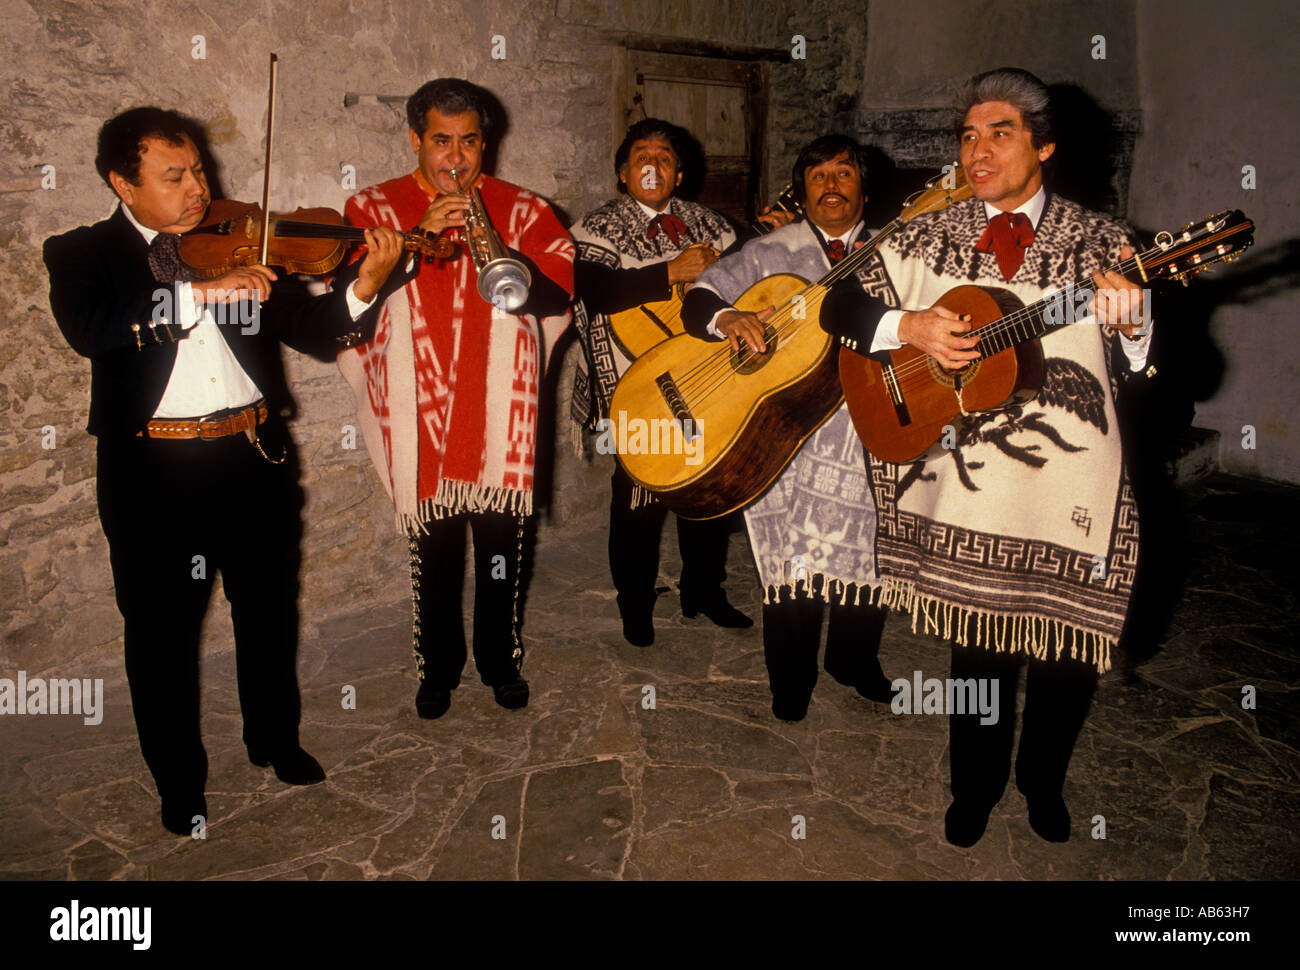 Mexican-American uomini, riproduzione di chitarre, chitarristi, chitarristi, banda Mariachi, i membri della band, San Antonio, Texas, Stati Uniti, America del Nord Foto Stock